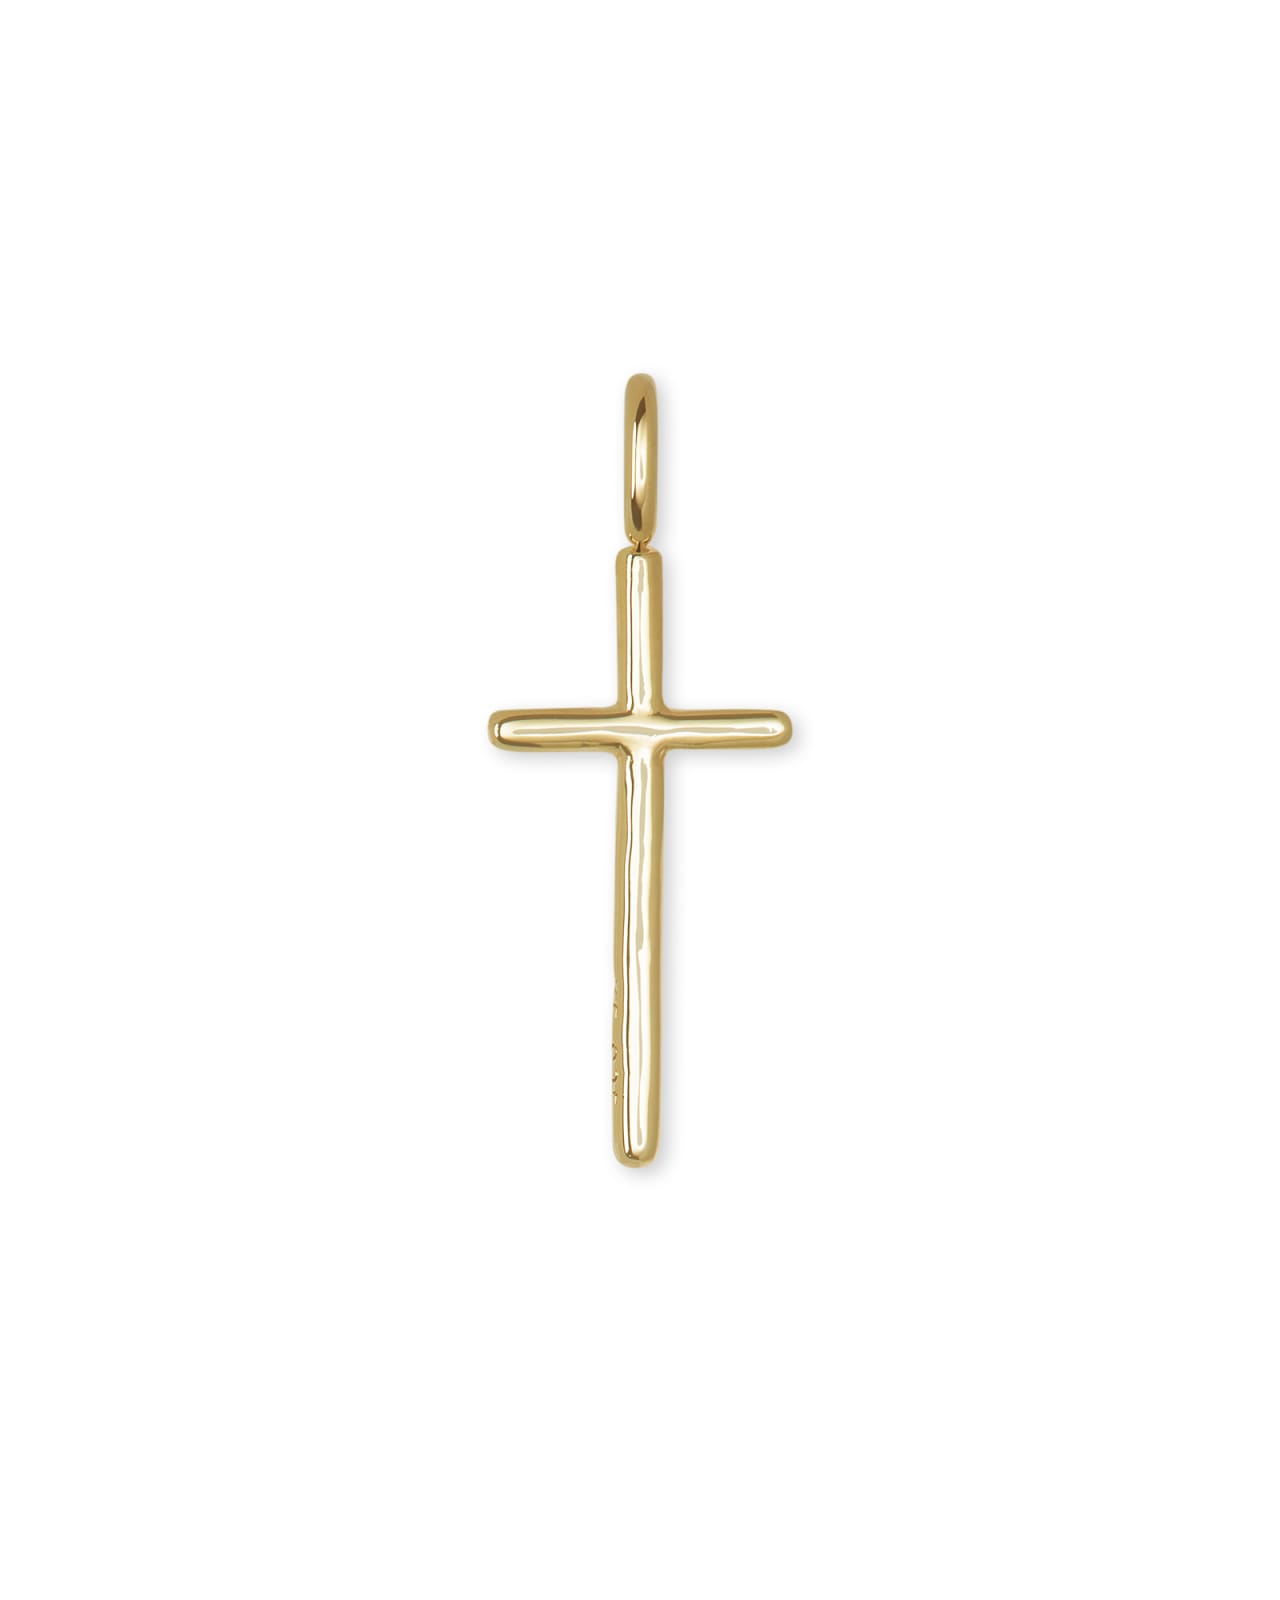 Cross Charm in 18k Gold Vermeil | Kendra Scott